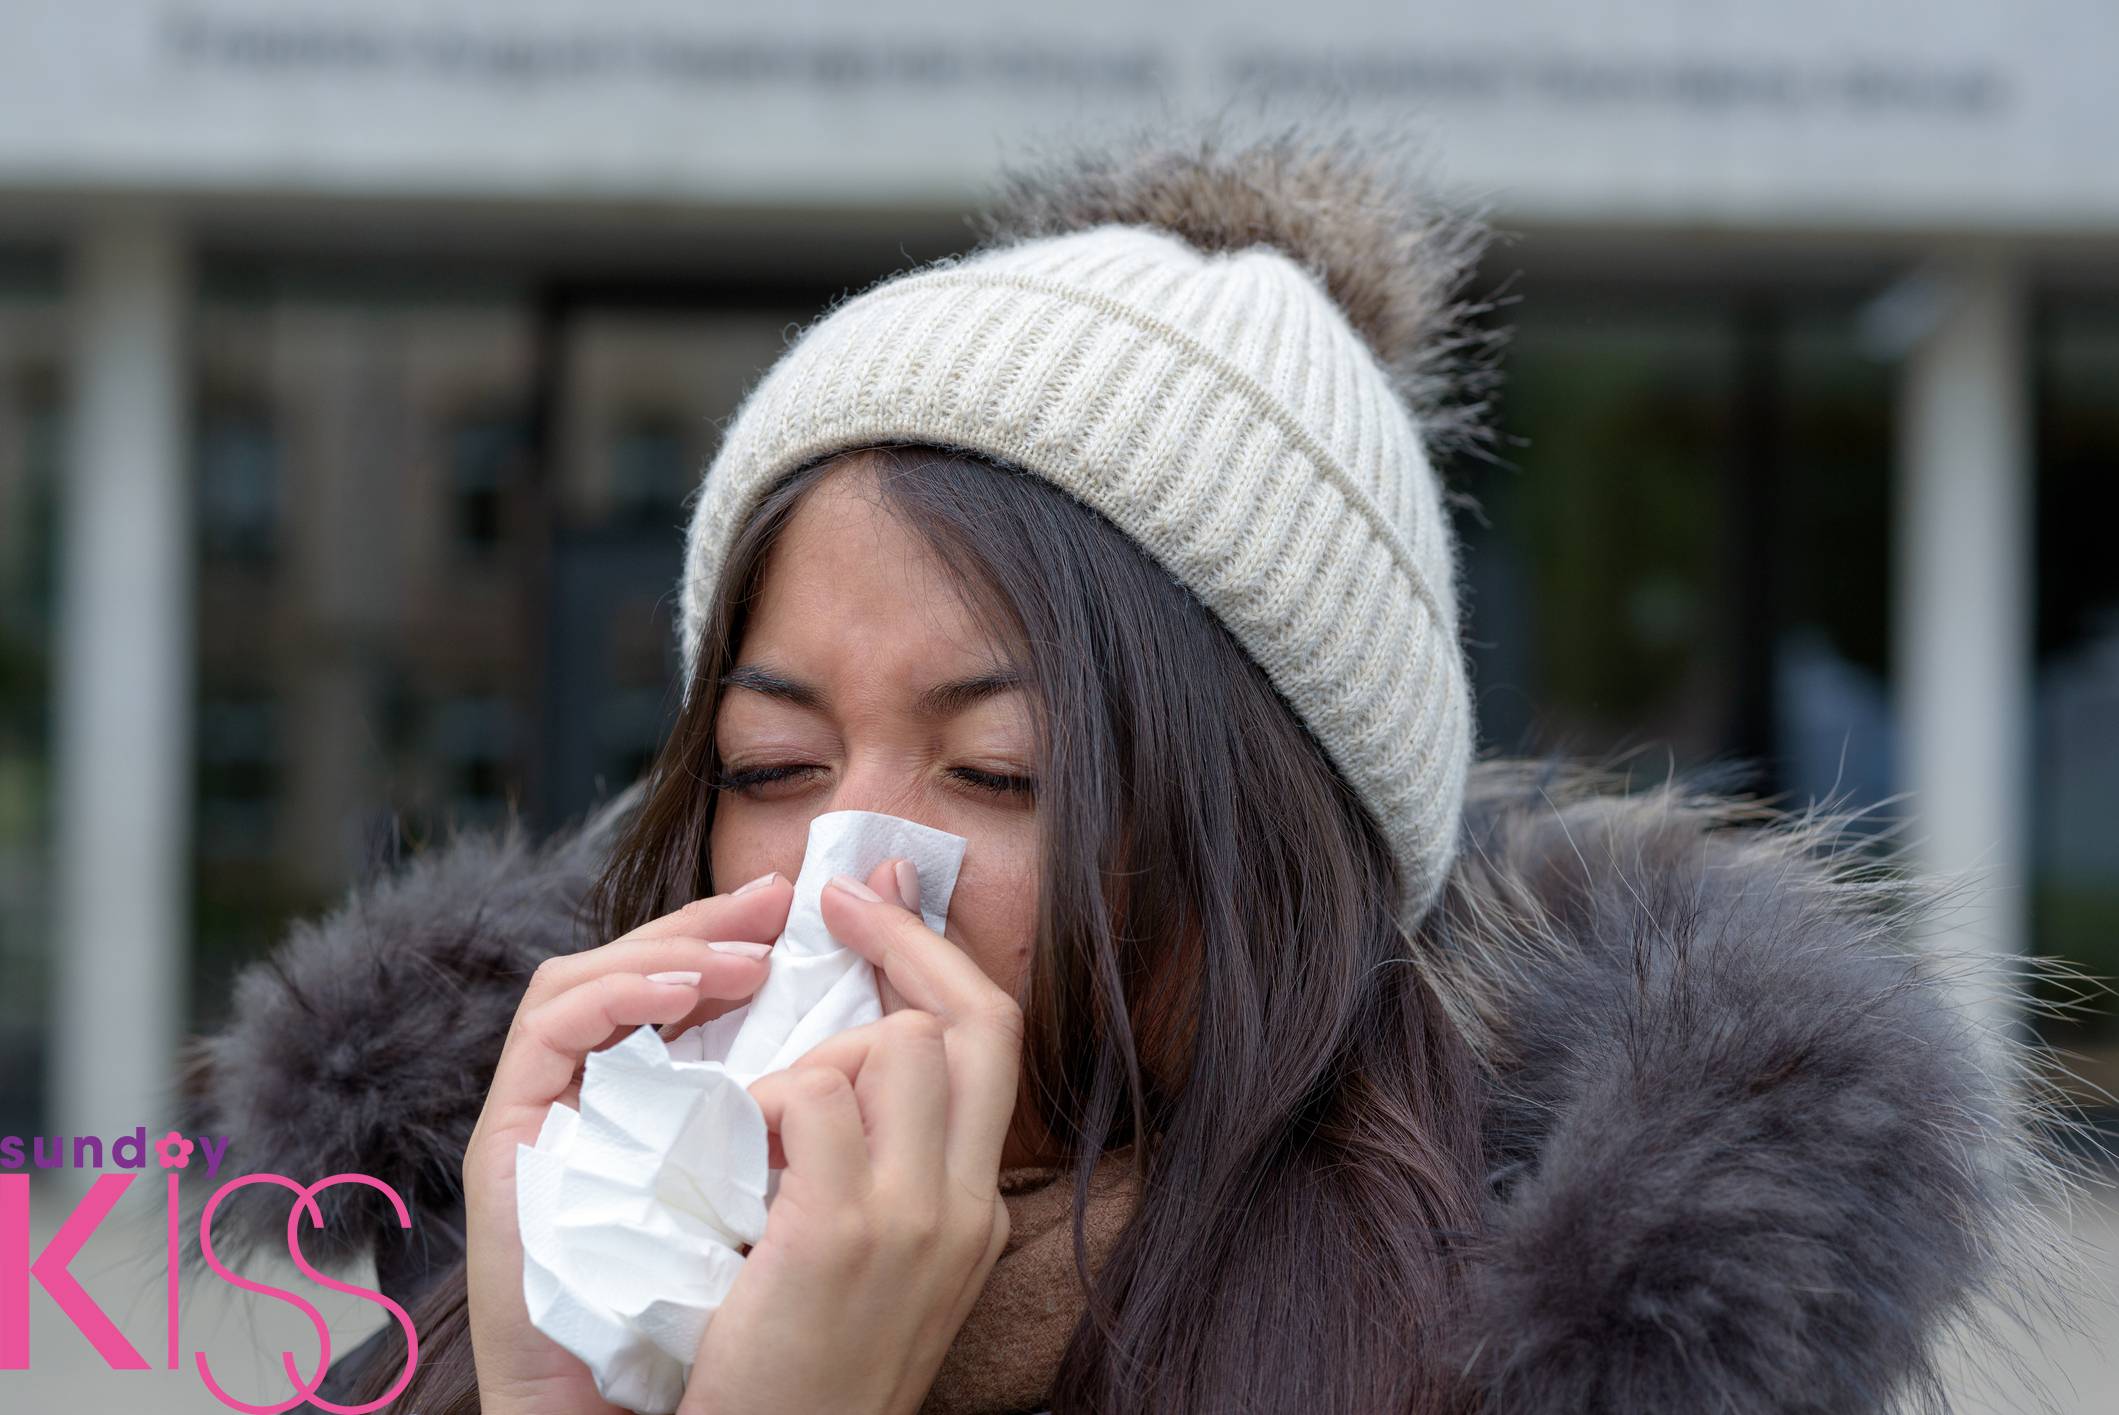 立冬湯水 Young woman with a seasonal winter cold or flu wearing a furry jacket and knitted cap blowing her nose on a white handkerchief outdoors on an urban street